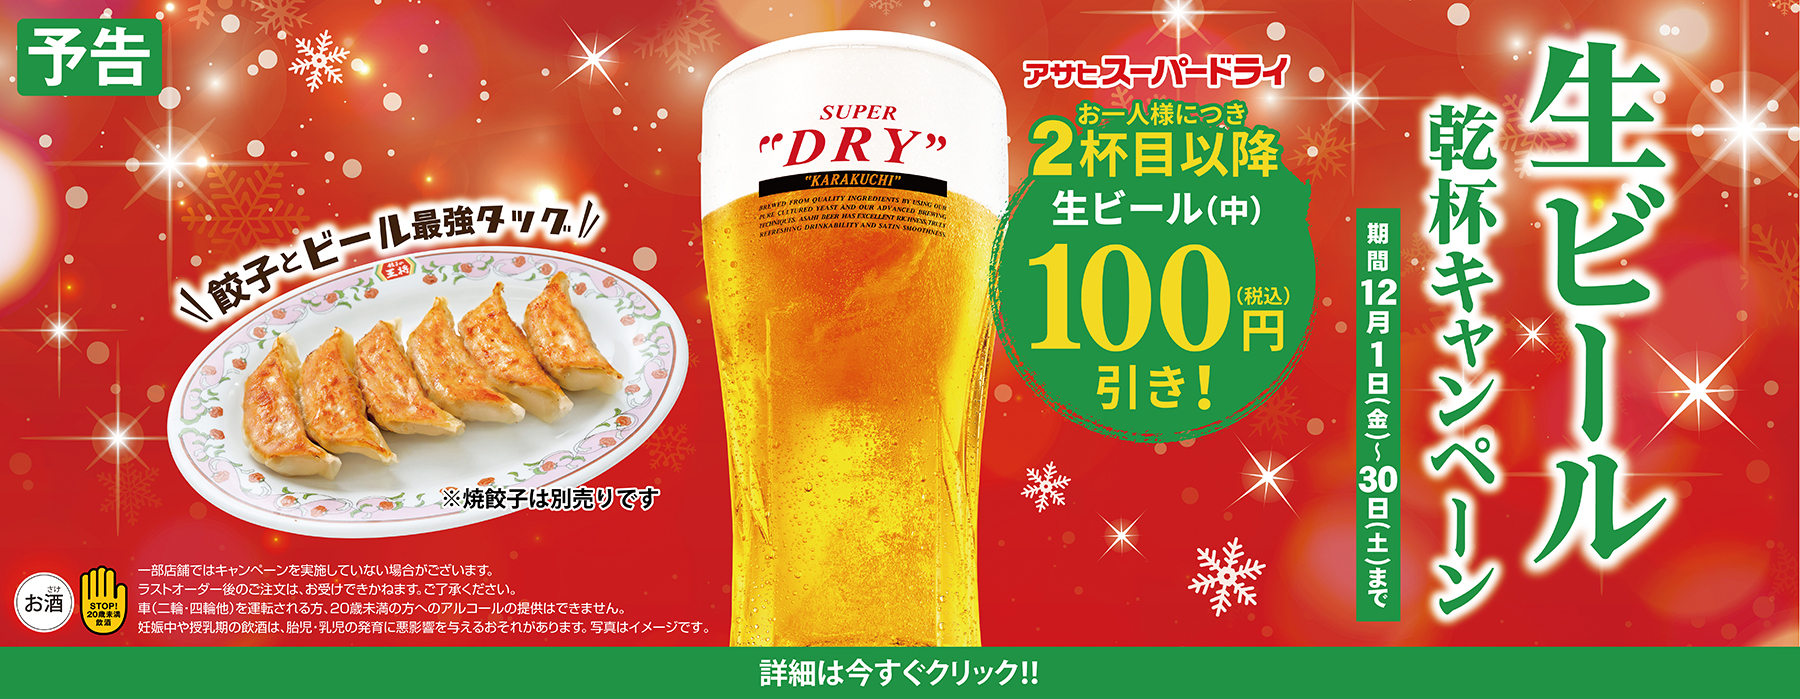 【12月1日〜12月30日】生ビール乾杯キャンペーン開催!!